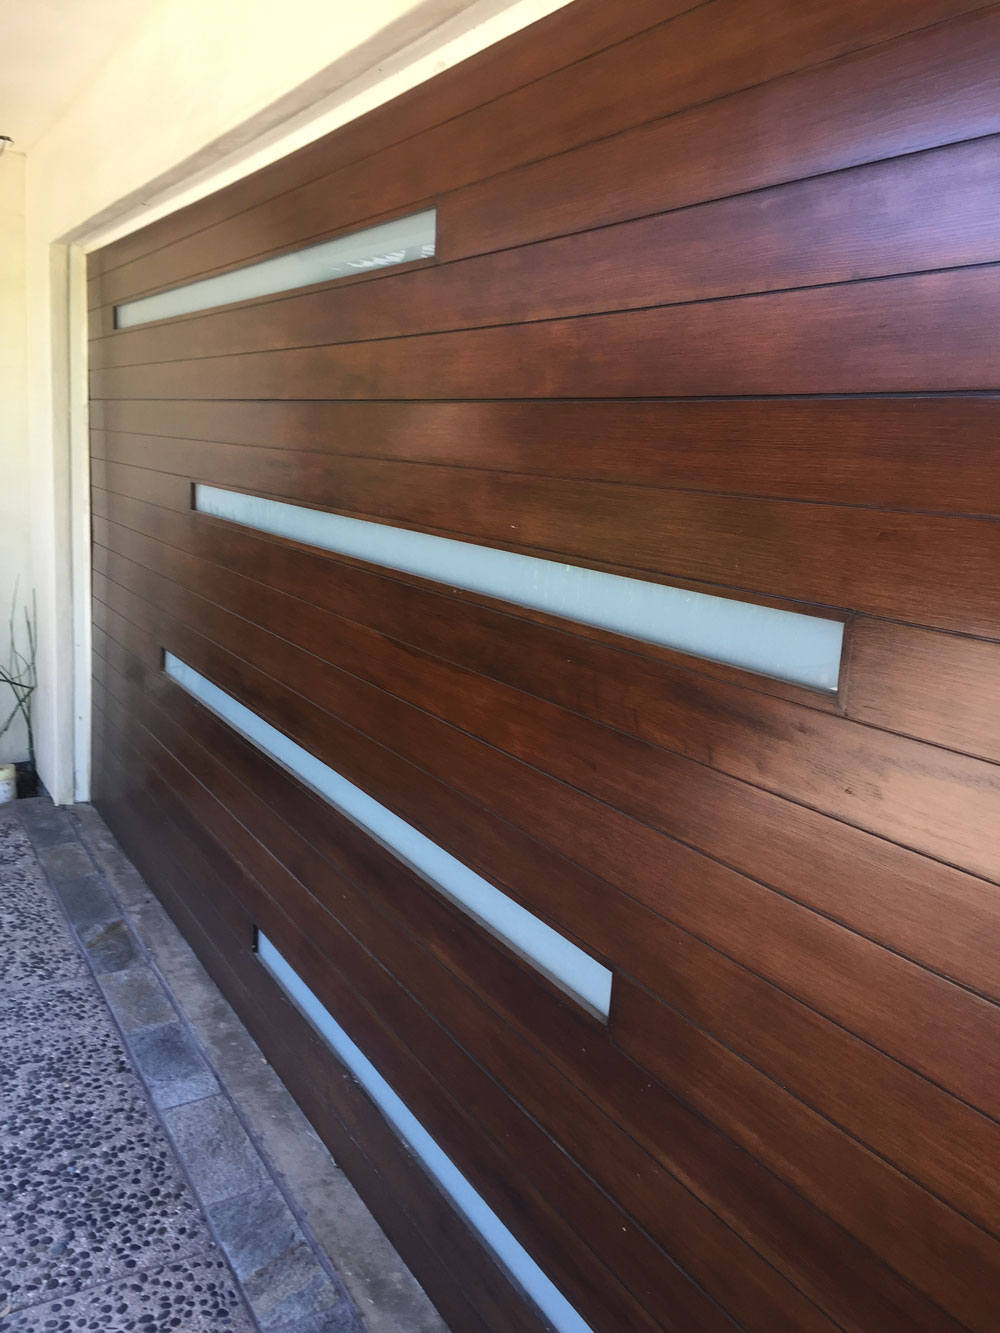 4-panel garage door design